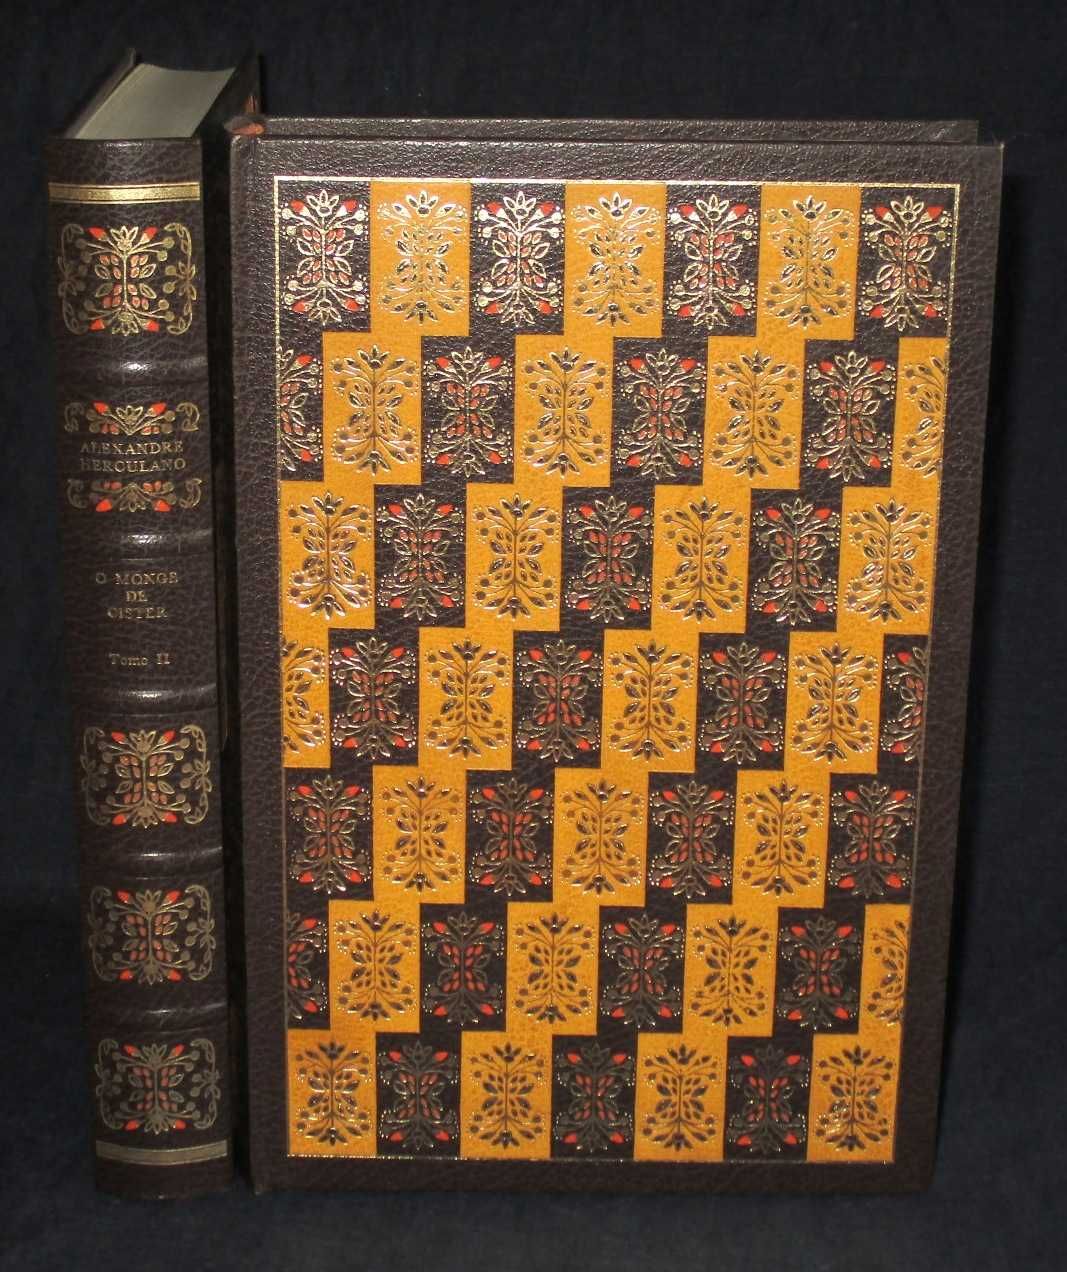 Livros O Monge de Cister Alexandre Herculano Amigos do Livro